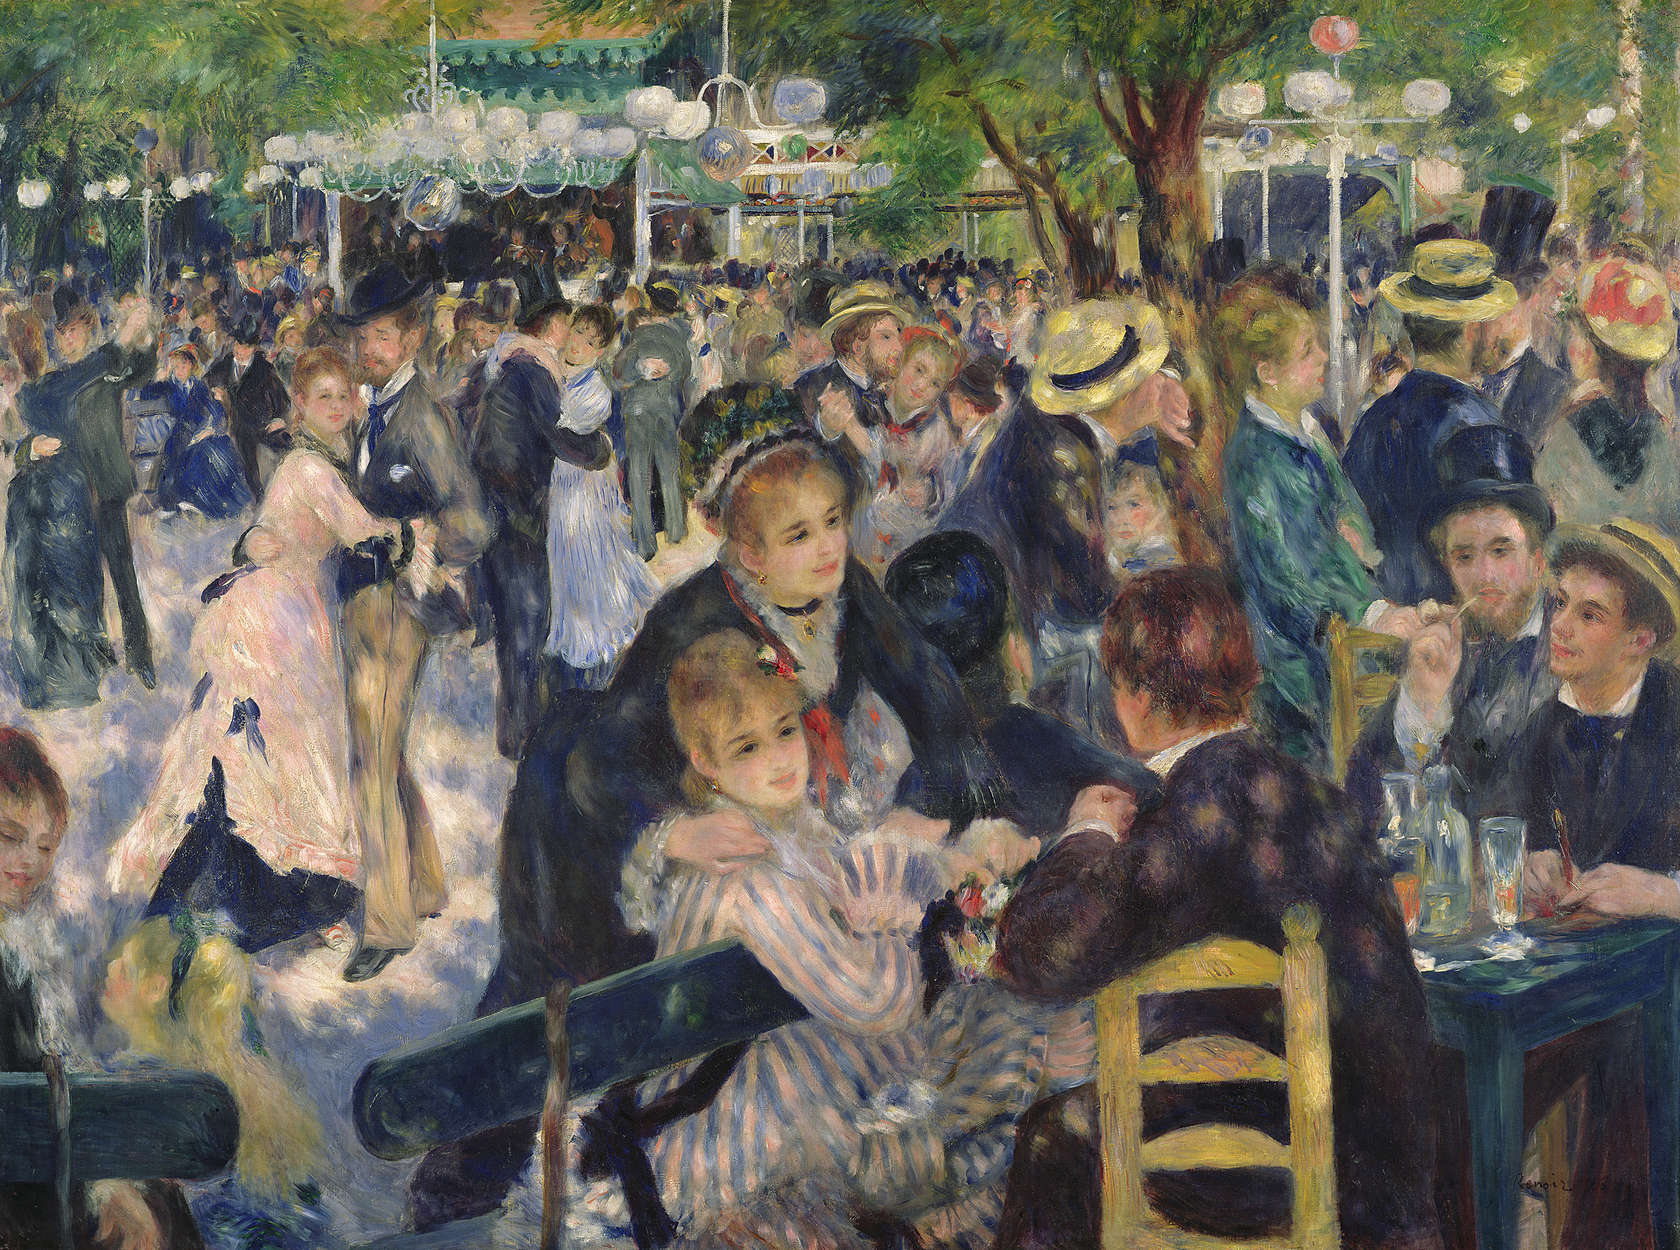             Mural "Baile en el Moulin de la Galette" de Pierre Auguste Renoir
        